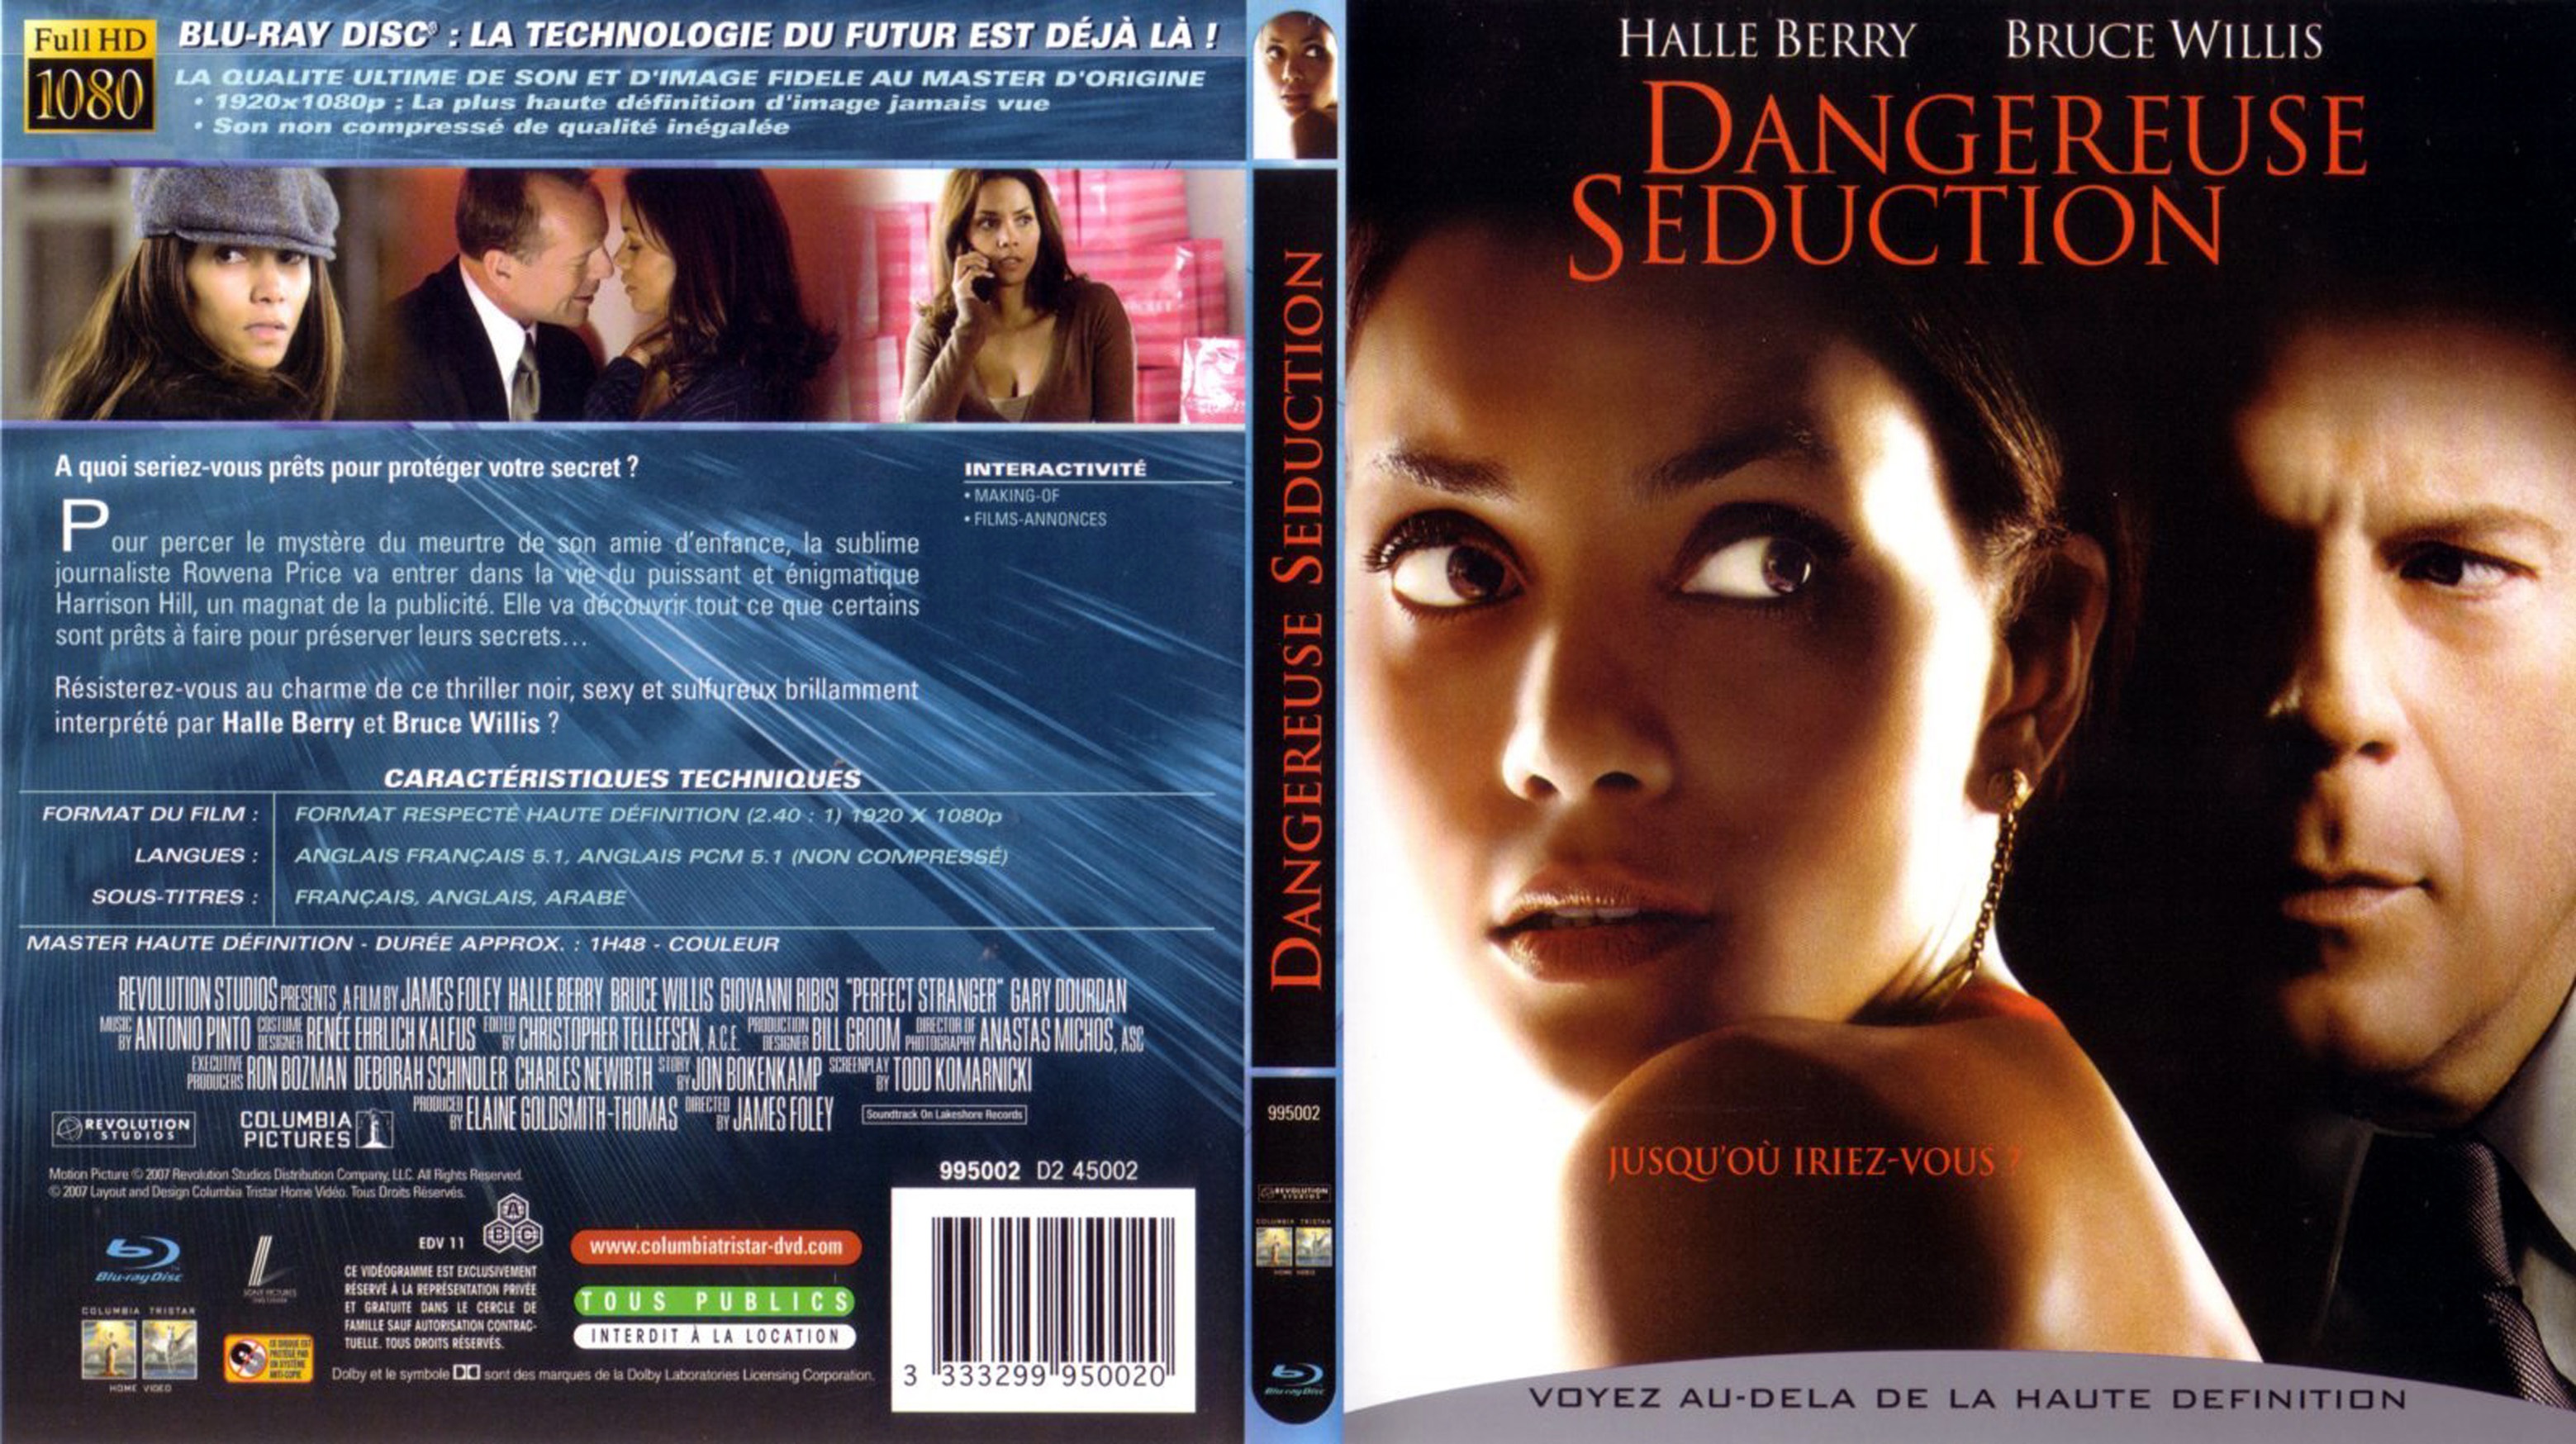 Jaquette DVD Dangereuse seduction (BLU-RAY)